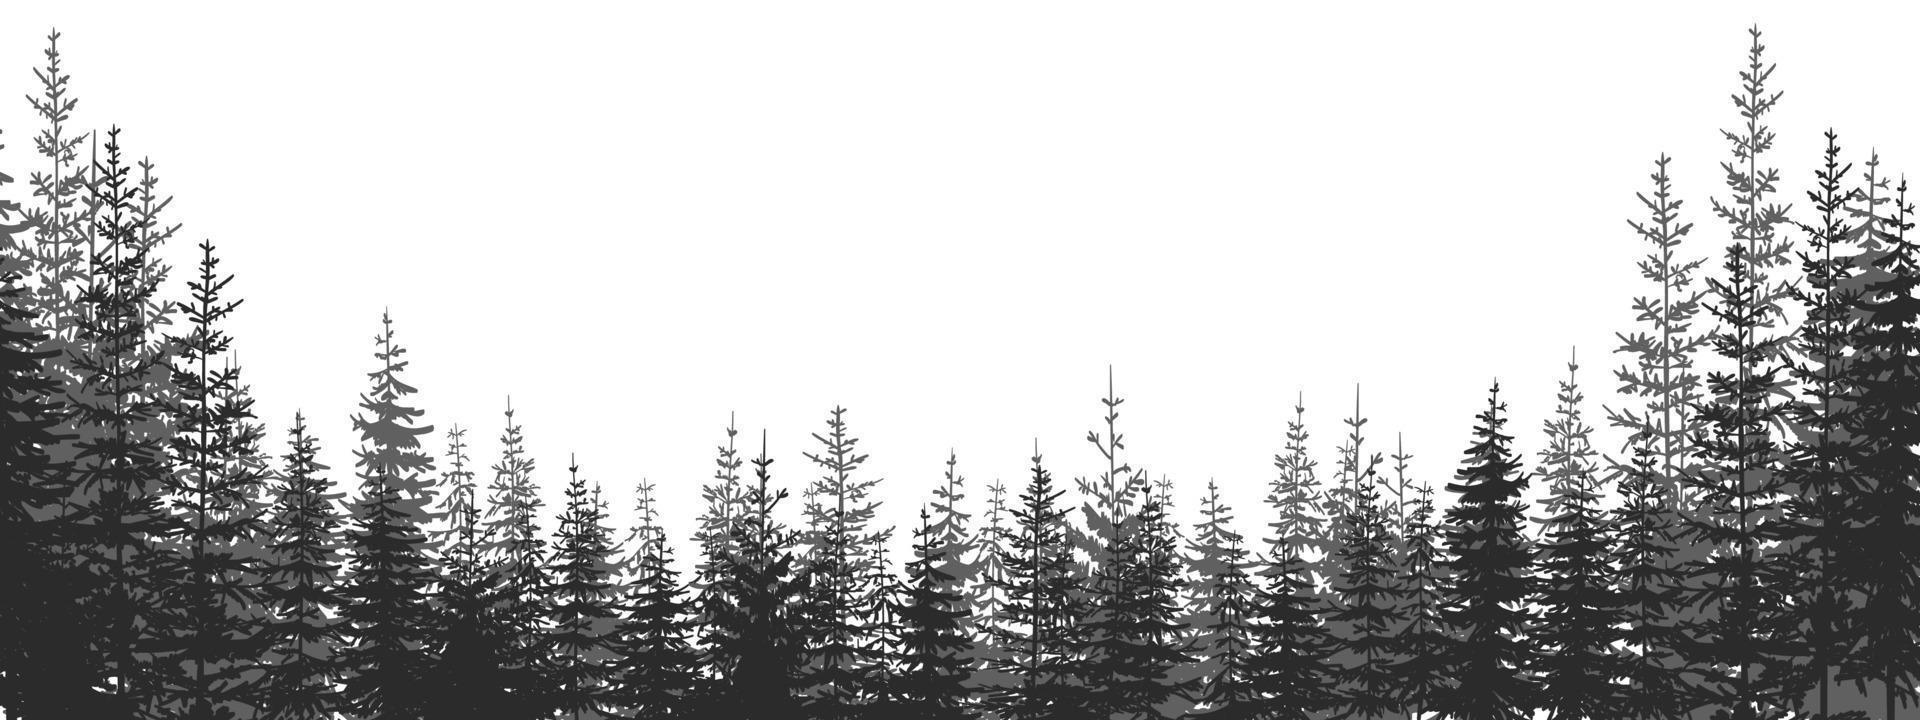 Woud. Woud landschap met zwart en wit silhouetten van bomen. vector illustratie